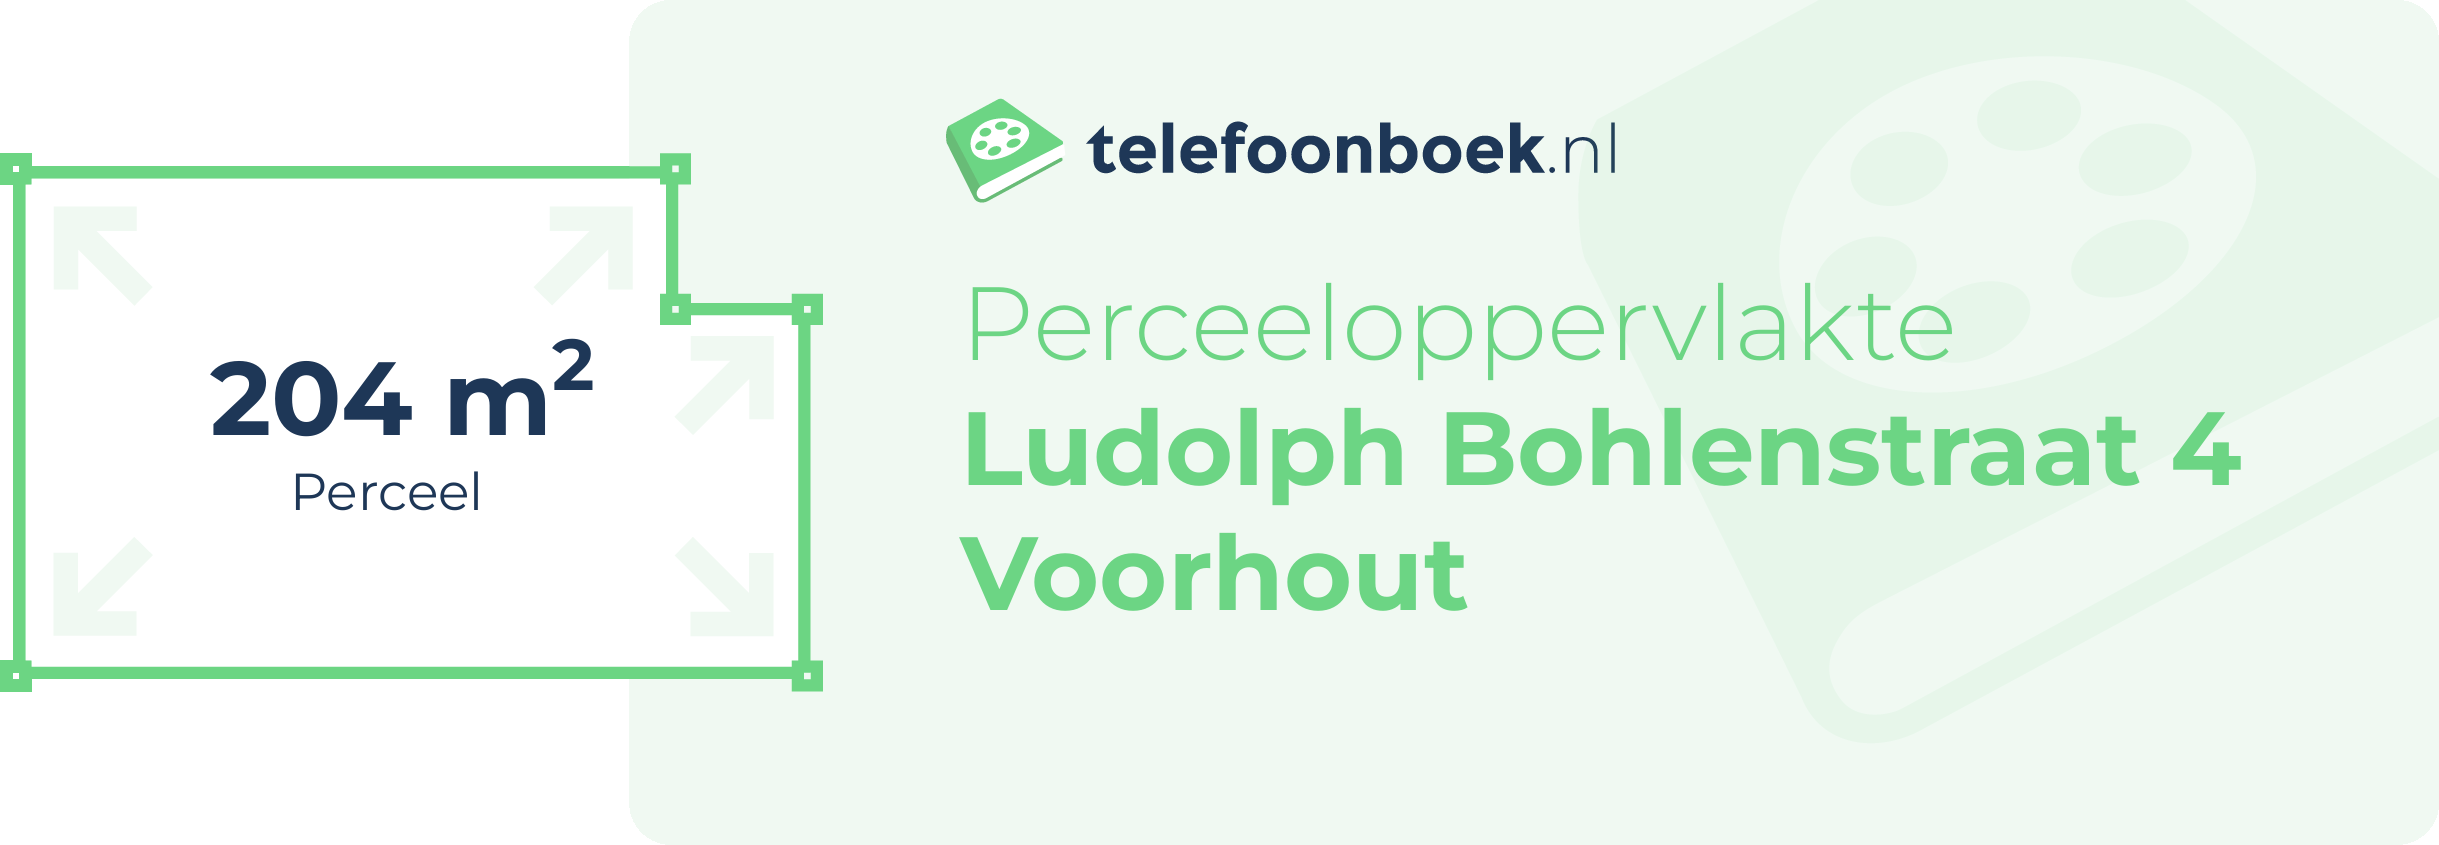 Perceeloppervlakte Ludolph Bohlenstraat 4 Voorhout